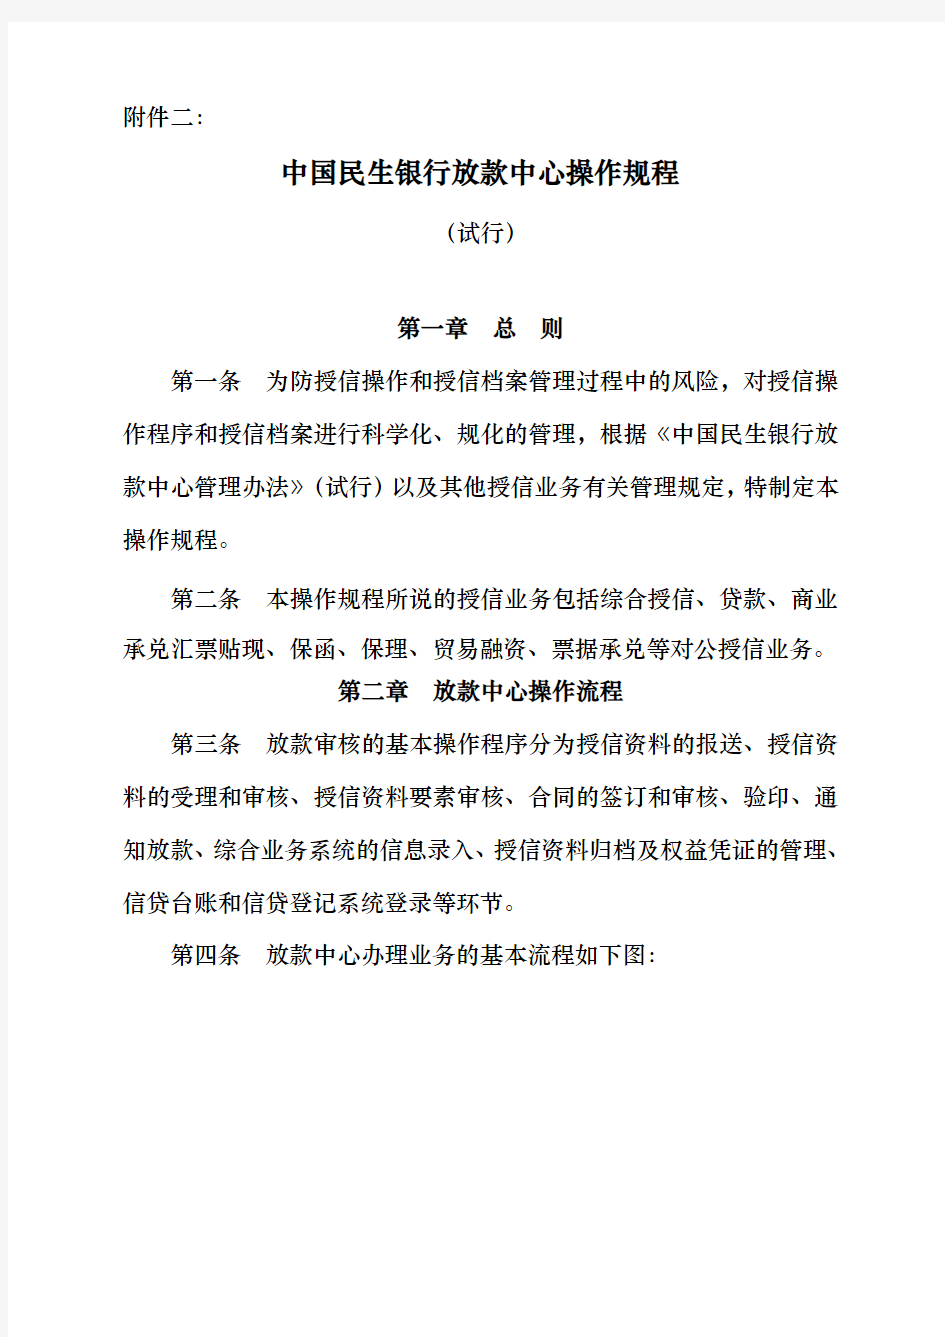 中国民生银行放款中心操作规程完整